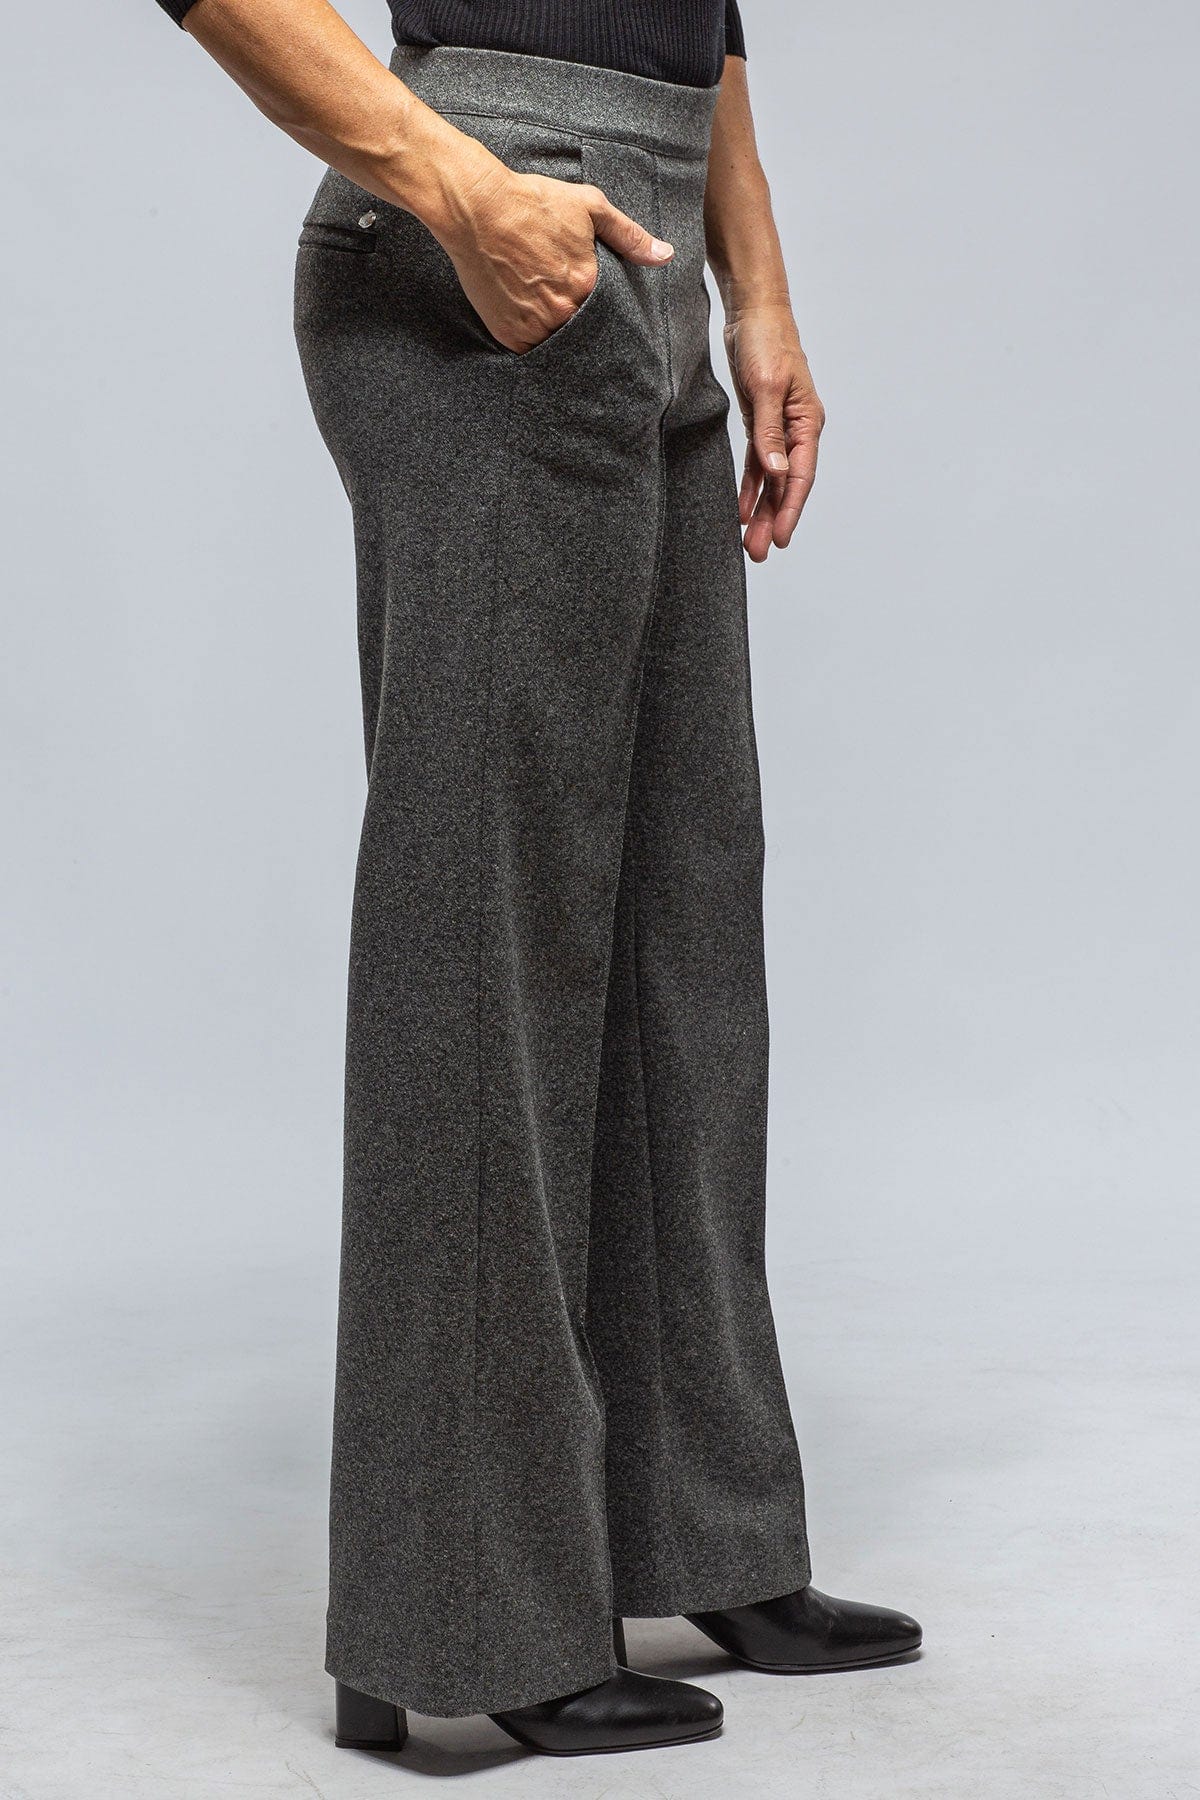 MAC Chiara Knit Trouser in Shadow Melange - AXEL'S